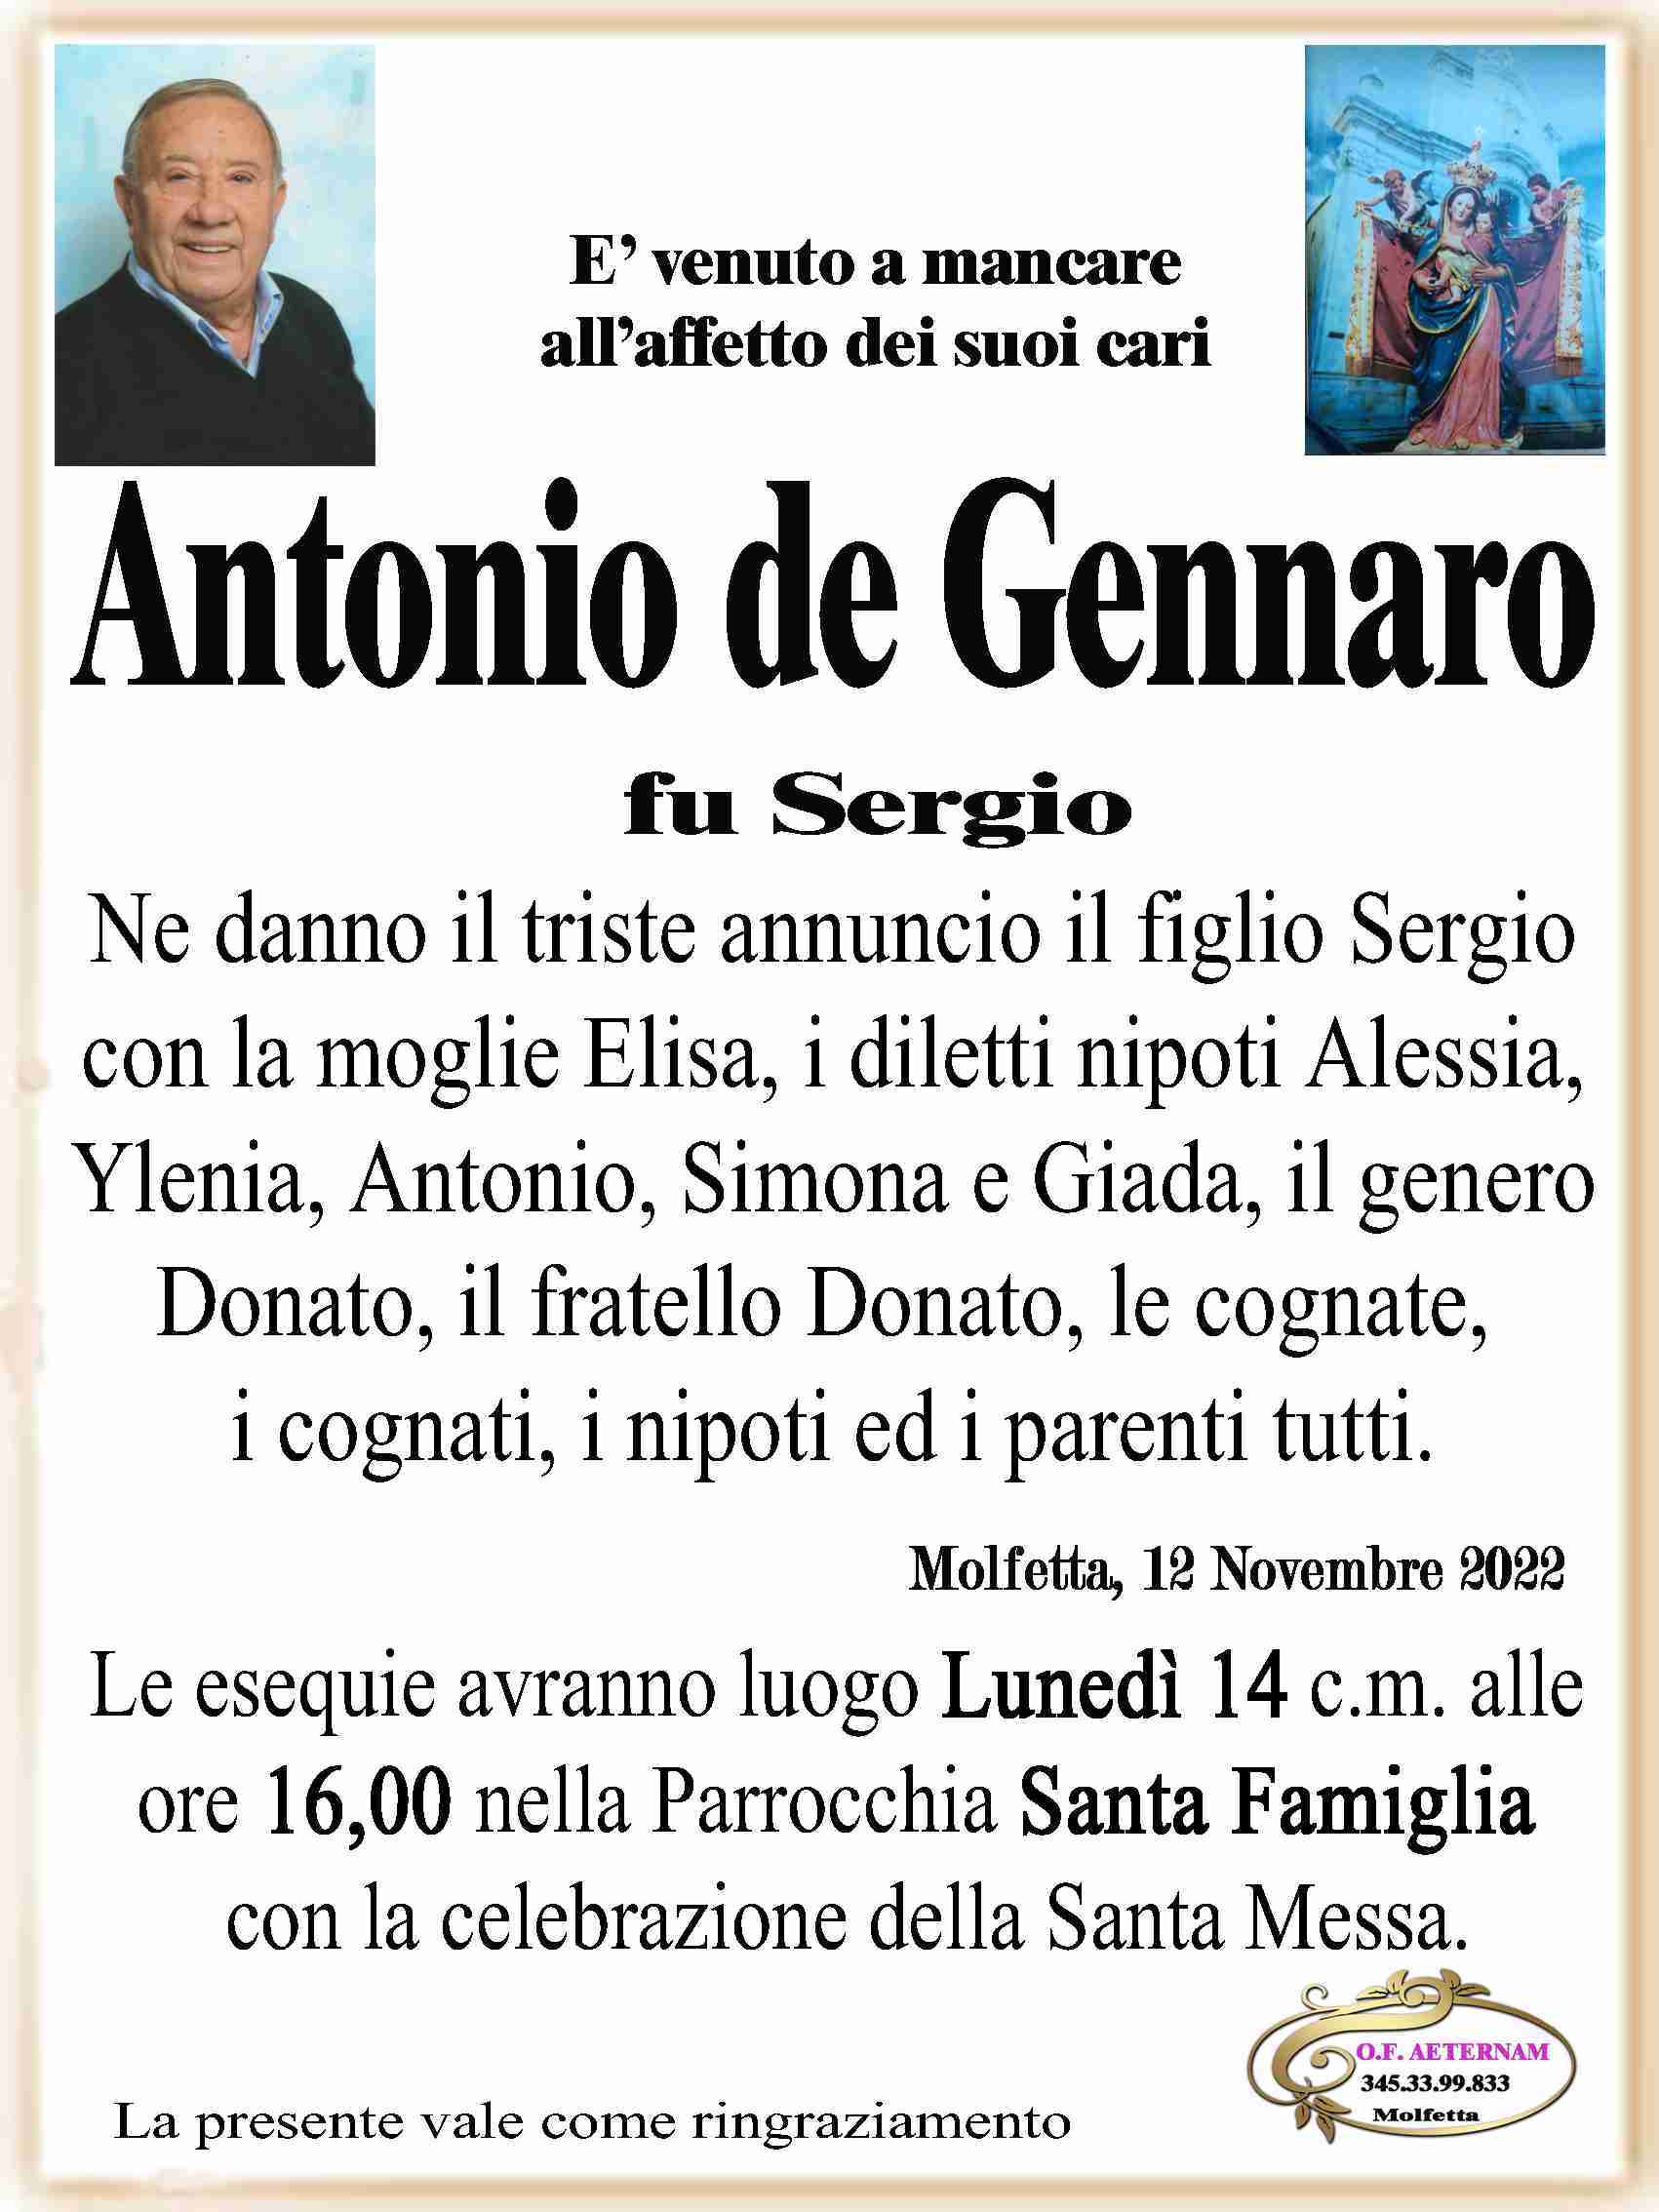 Antonio de Gennaro